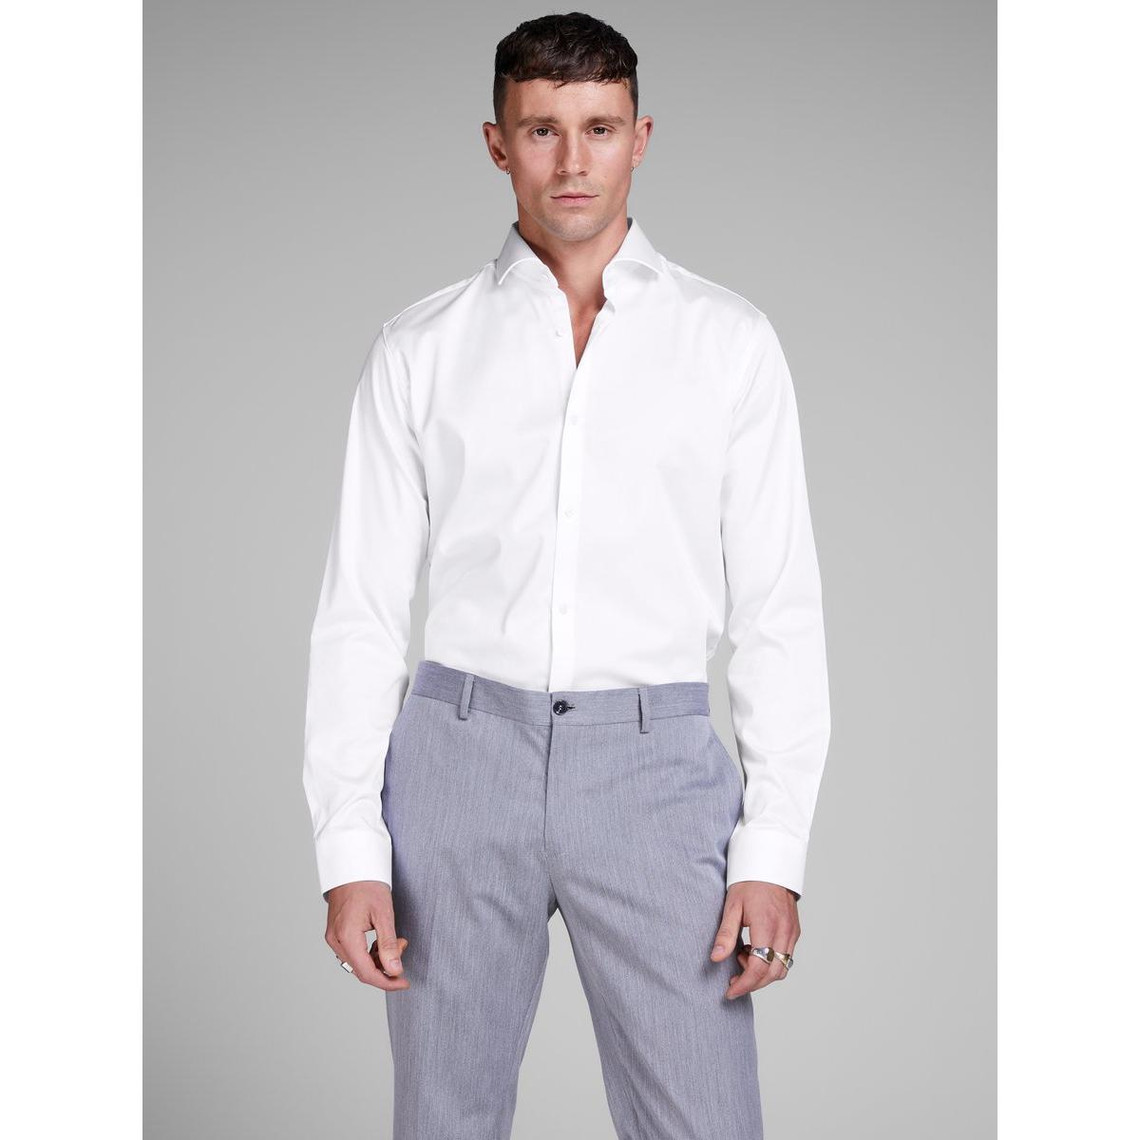 Chemise habillée Comfort Fit Col chemise Manches longues Blanc en coton